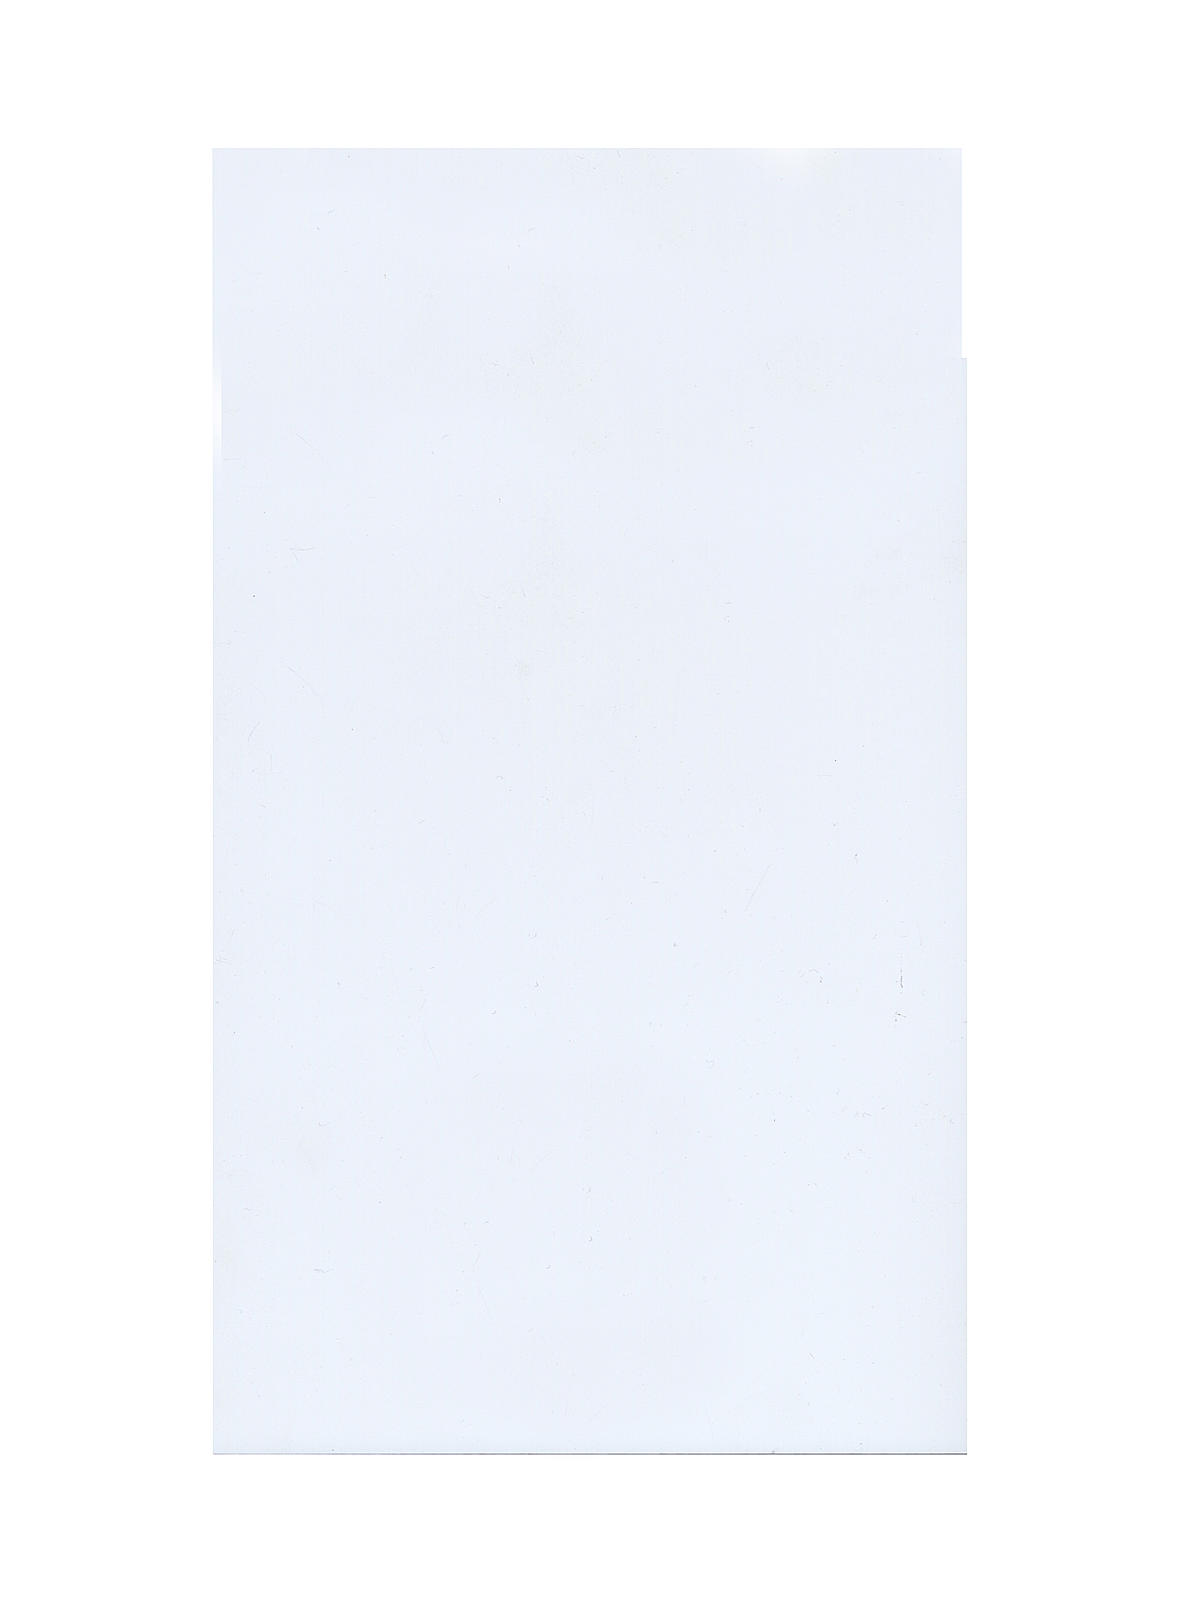 Super White Styrene Sheets 0.030 In. 0.75 Mm 7.6 In. X 11 In.